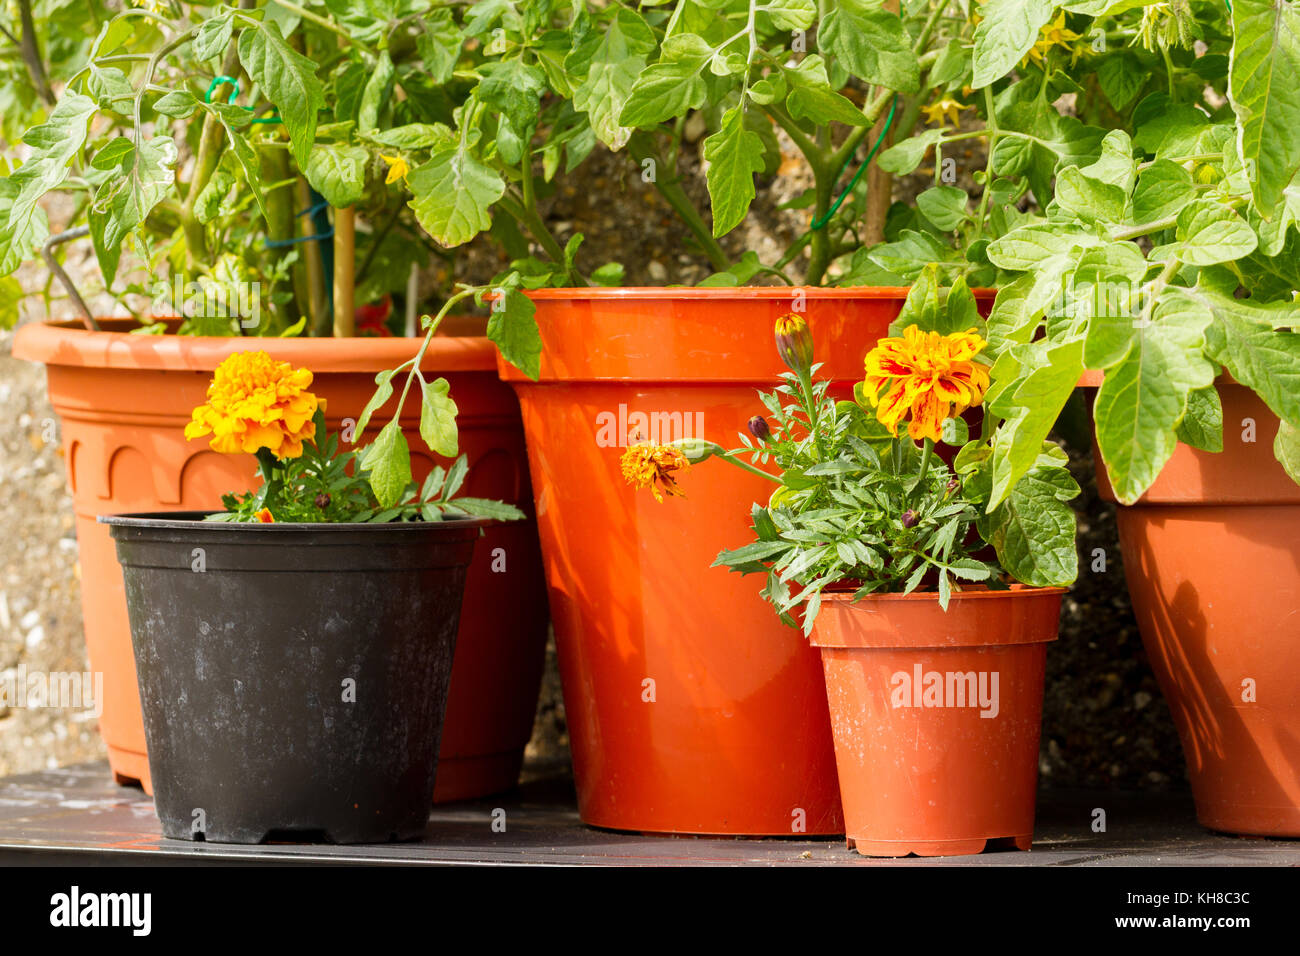 Close up de tomate cerise de plantes poussant dans des pots avec oeillet fleurs pour prévenir/repousser contre les ravageurs les pucerons, Royaume-Uni Banque D'Images